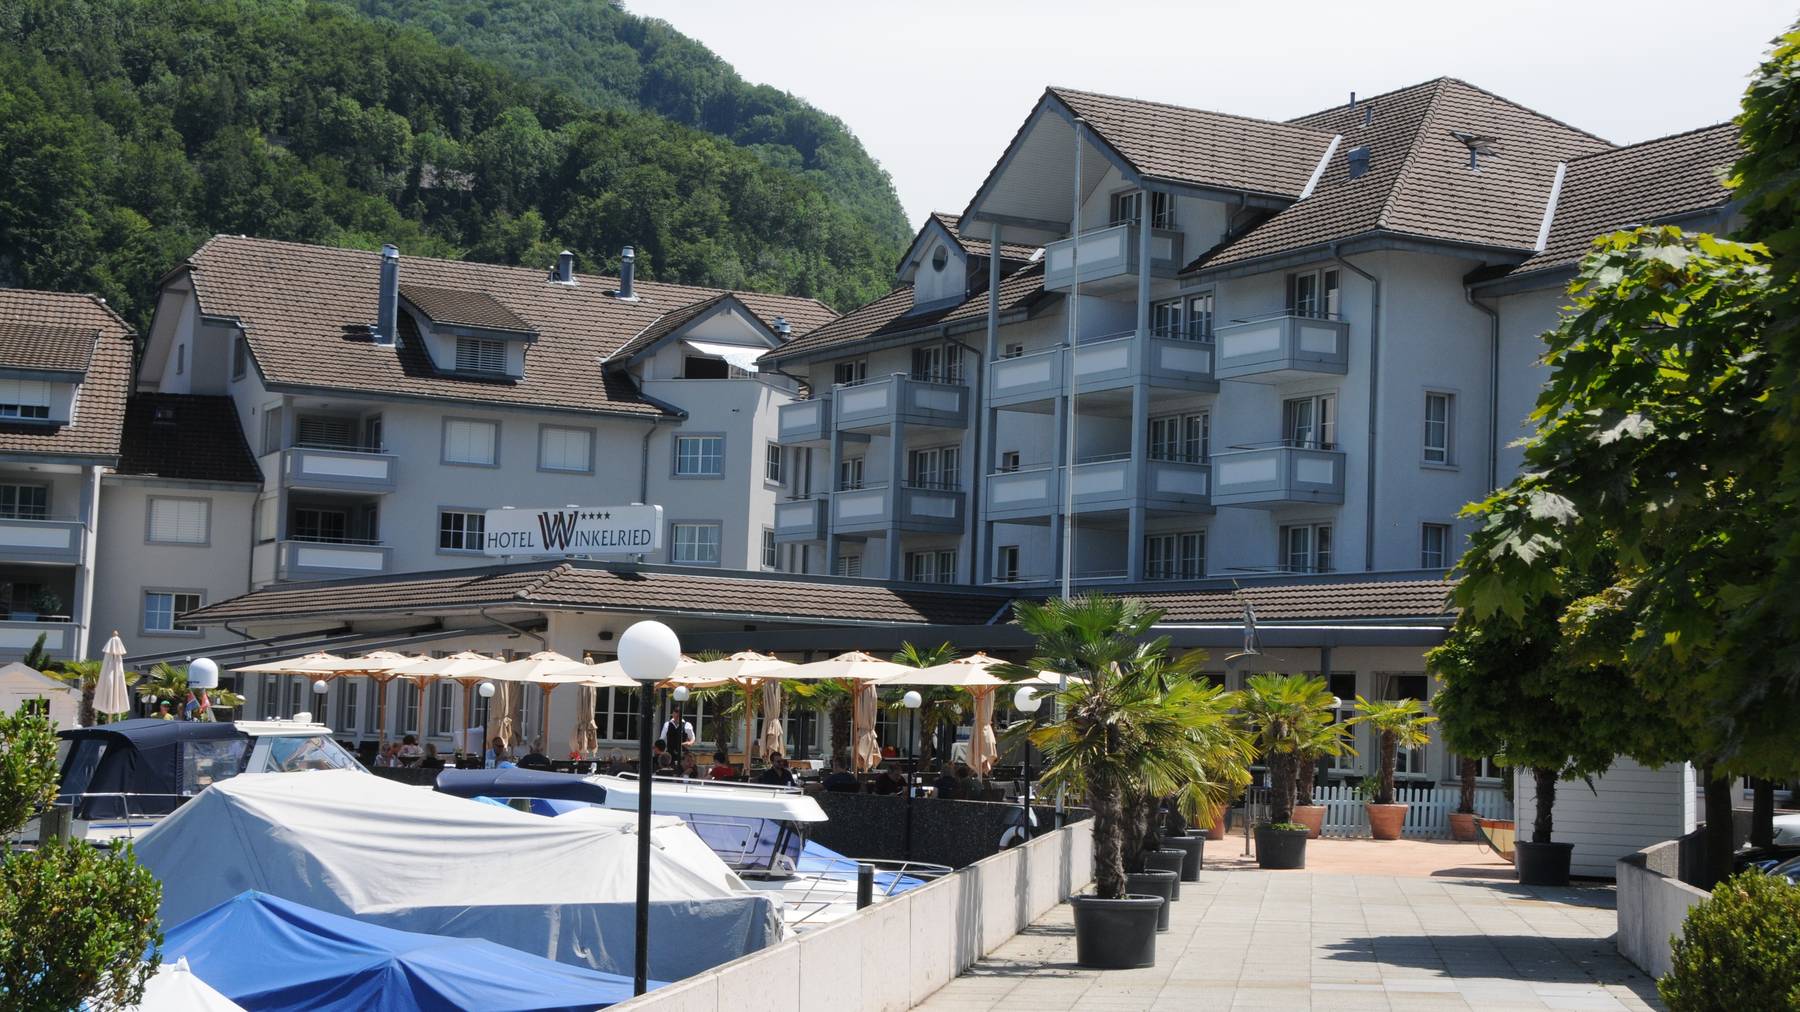 Das Hotel Winkelried in Stansstad liegt direkt am See. Aber auch hier findet man am Wochenende vom 15. und 16. Juni kaum noch freie Zimmer.